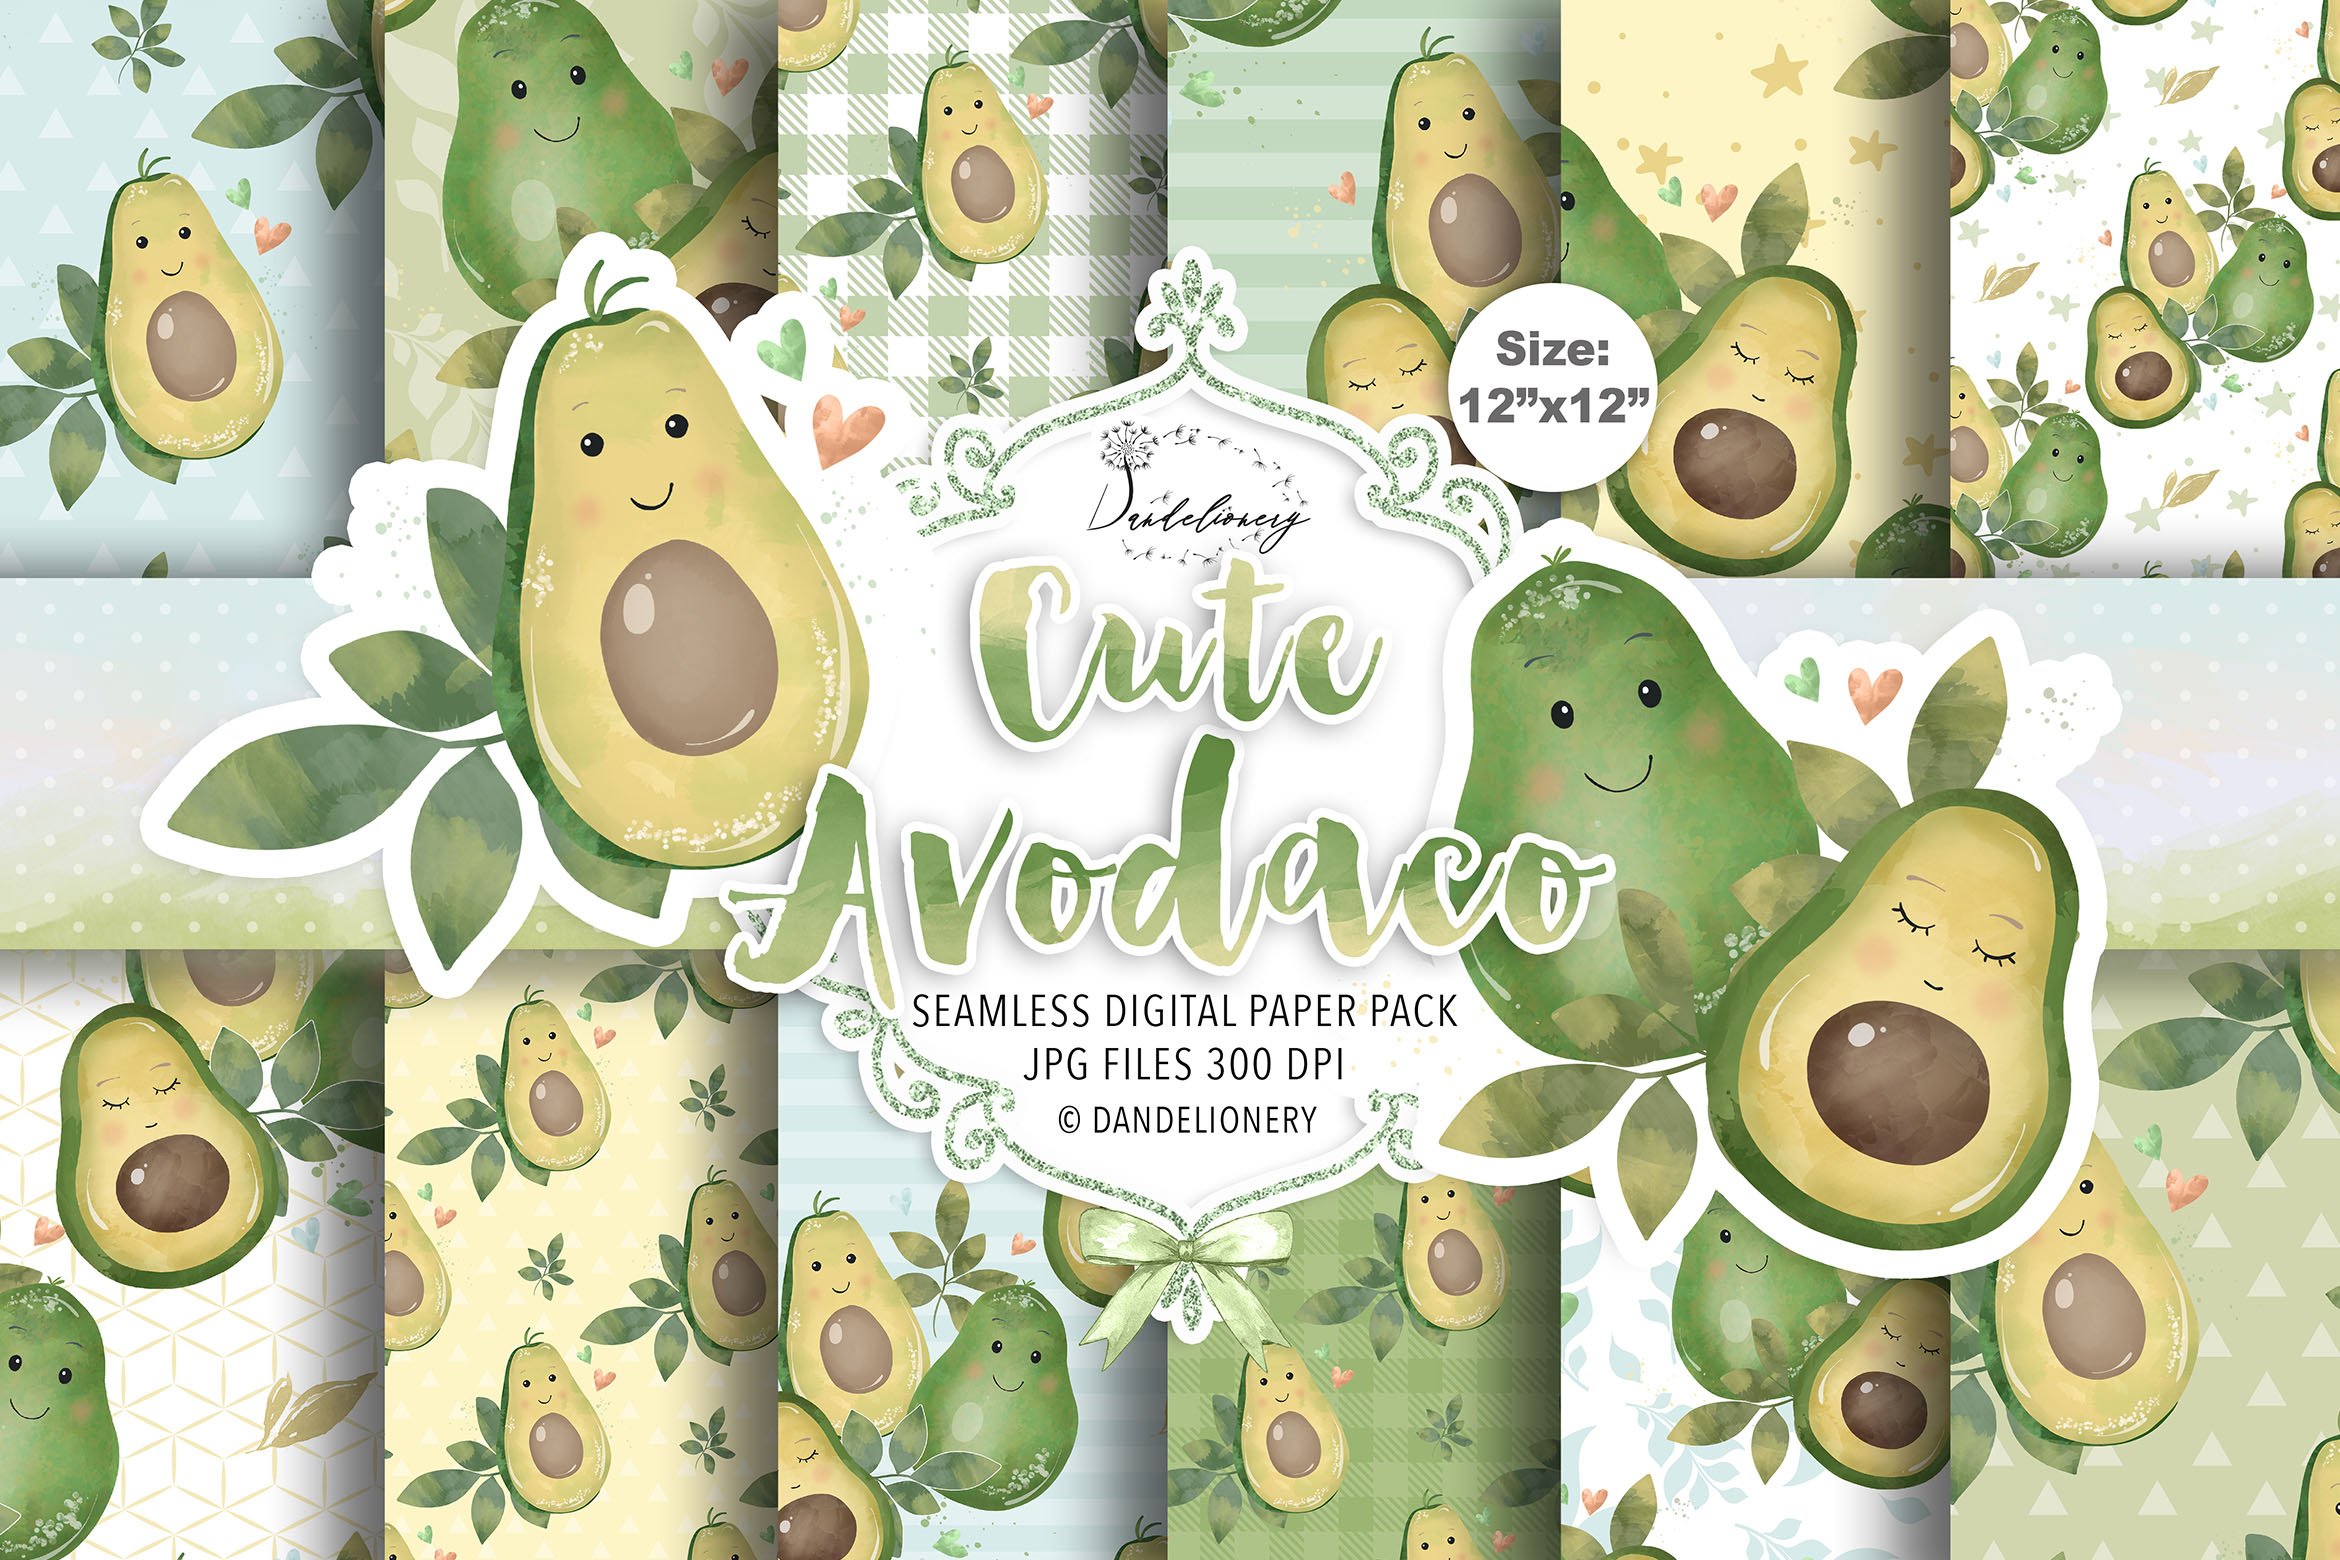 Cute Avocado digital paper pack cover image.